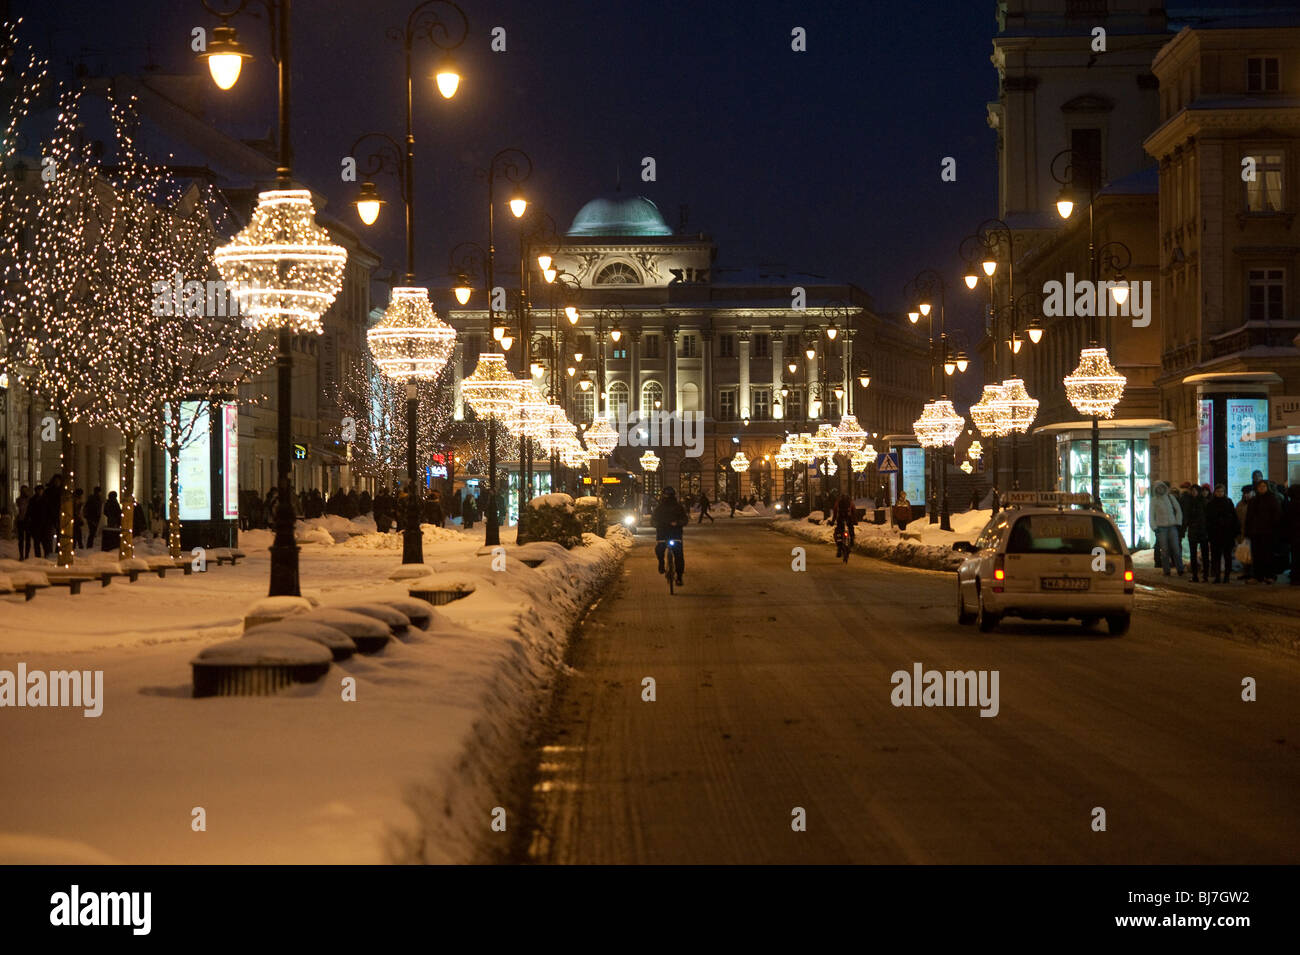 Nowy Swiat rue principale dans la nuit dans le centre de Varsovie Pologne Banque D'Images